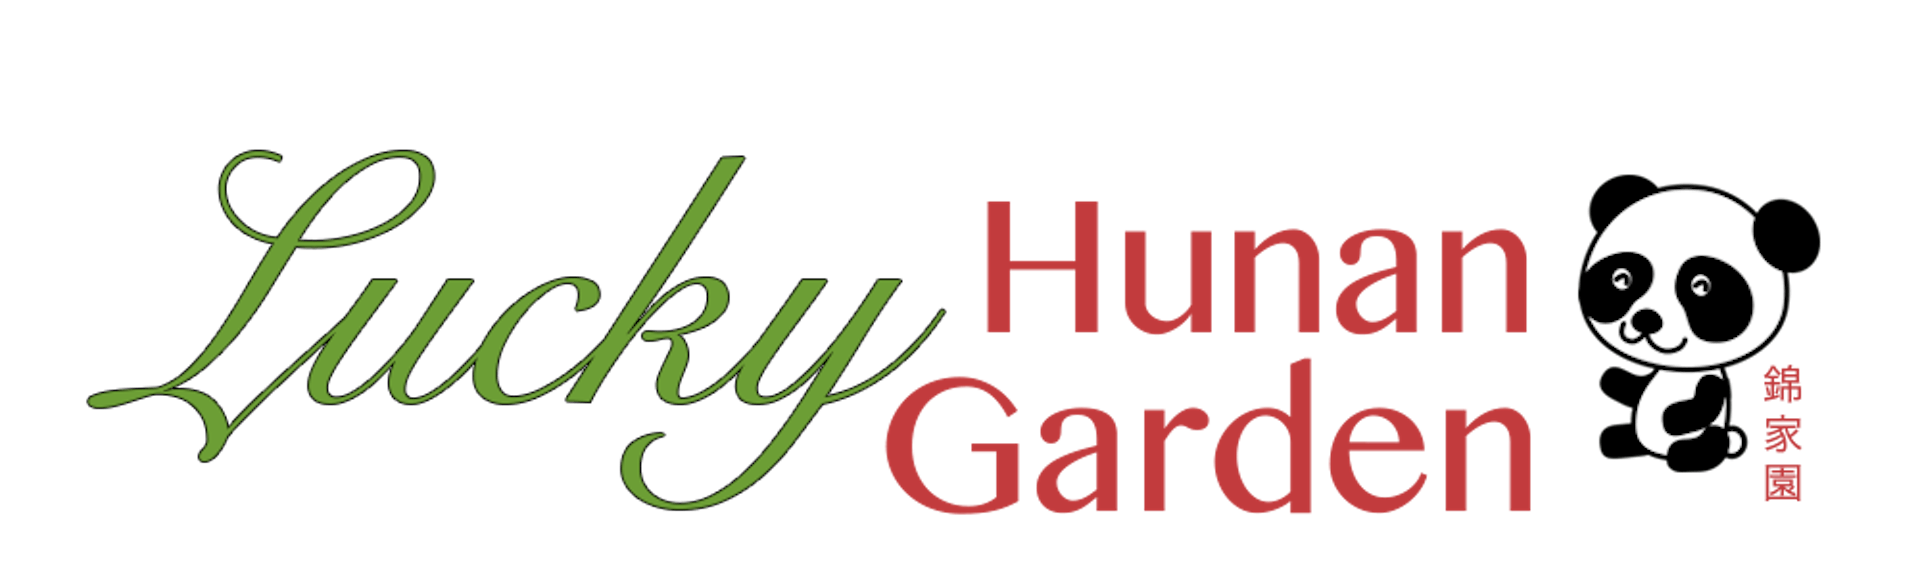 Lucky Hunan Garden Fairview Nj 07022 Menu Order Online